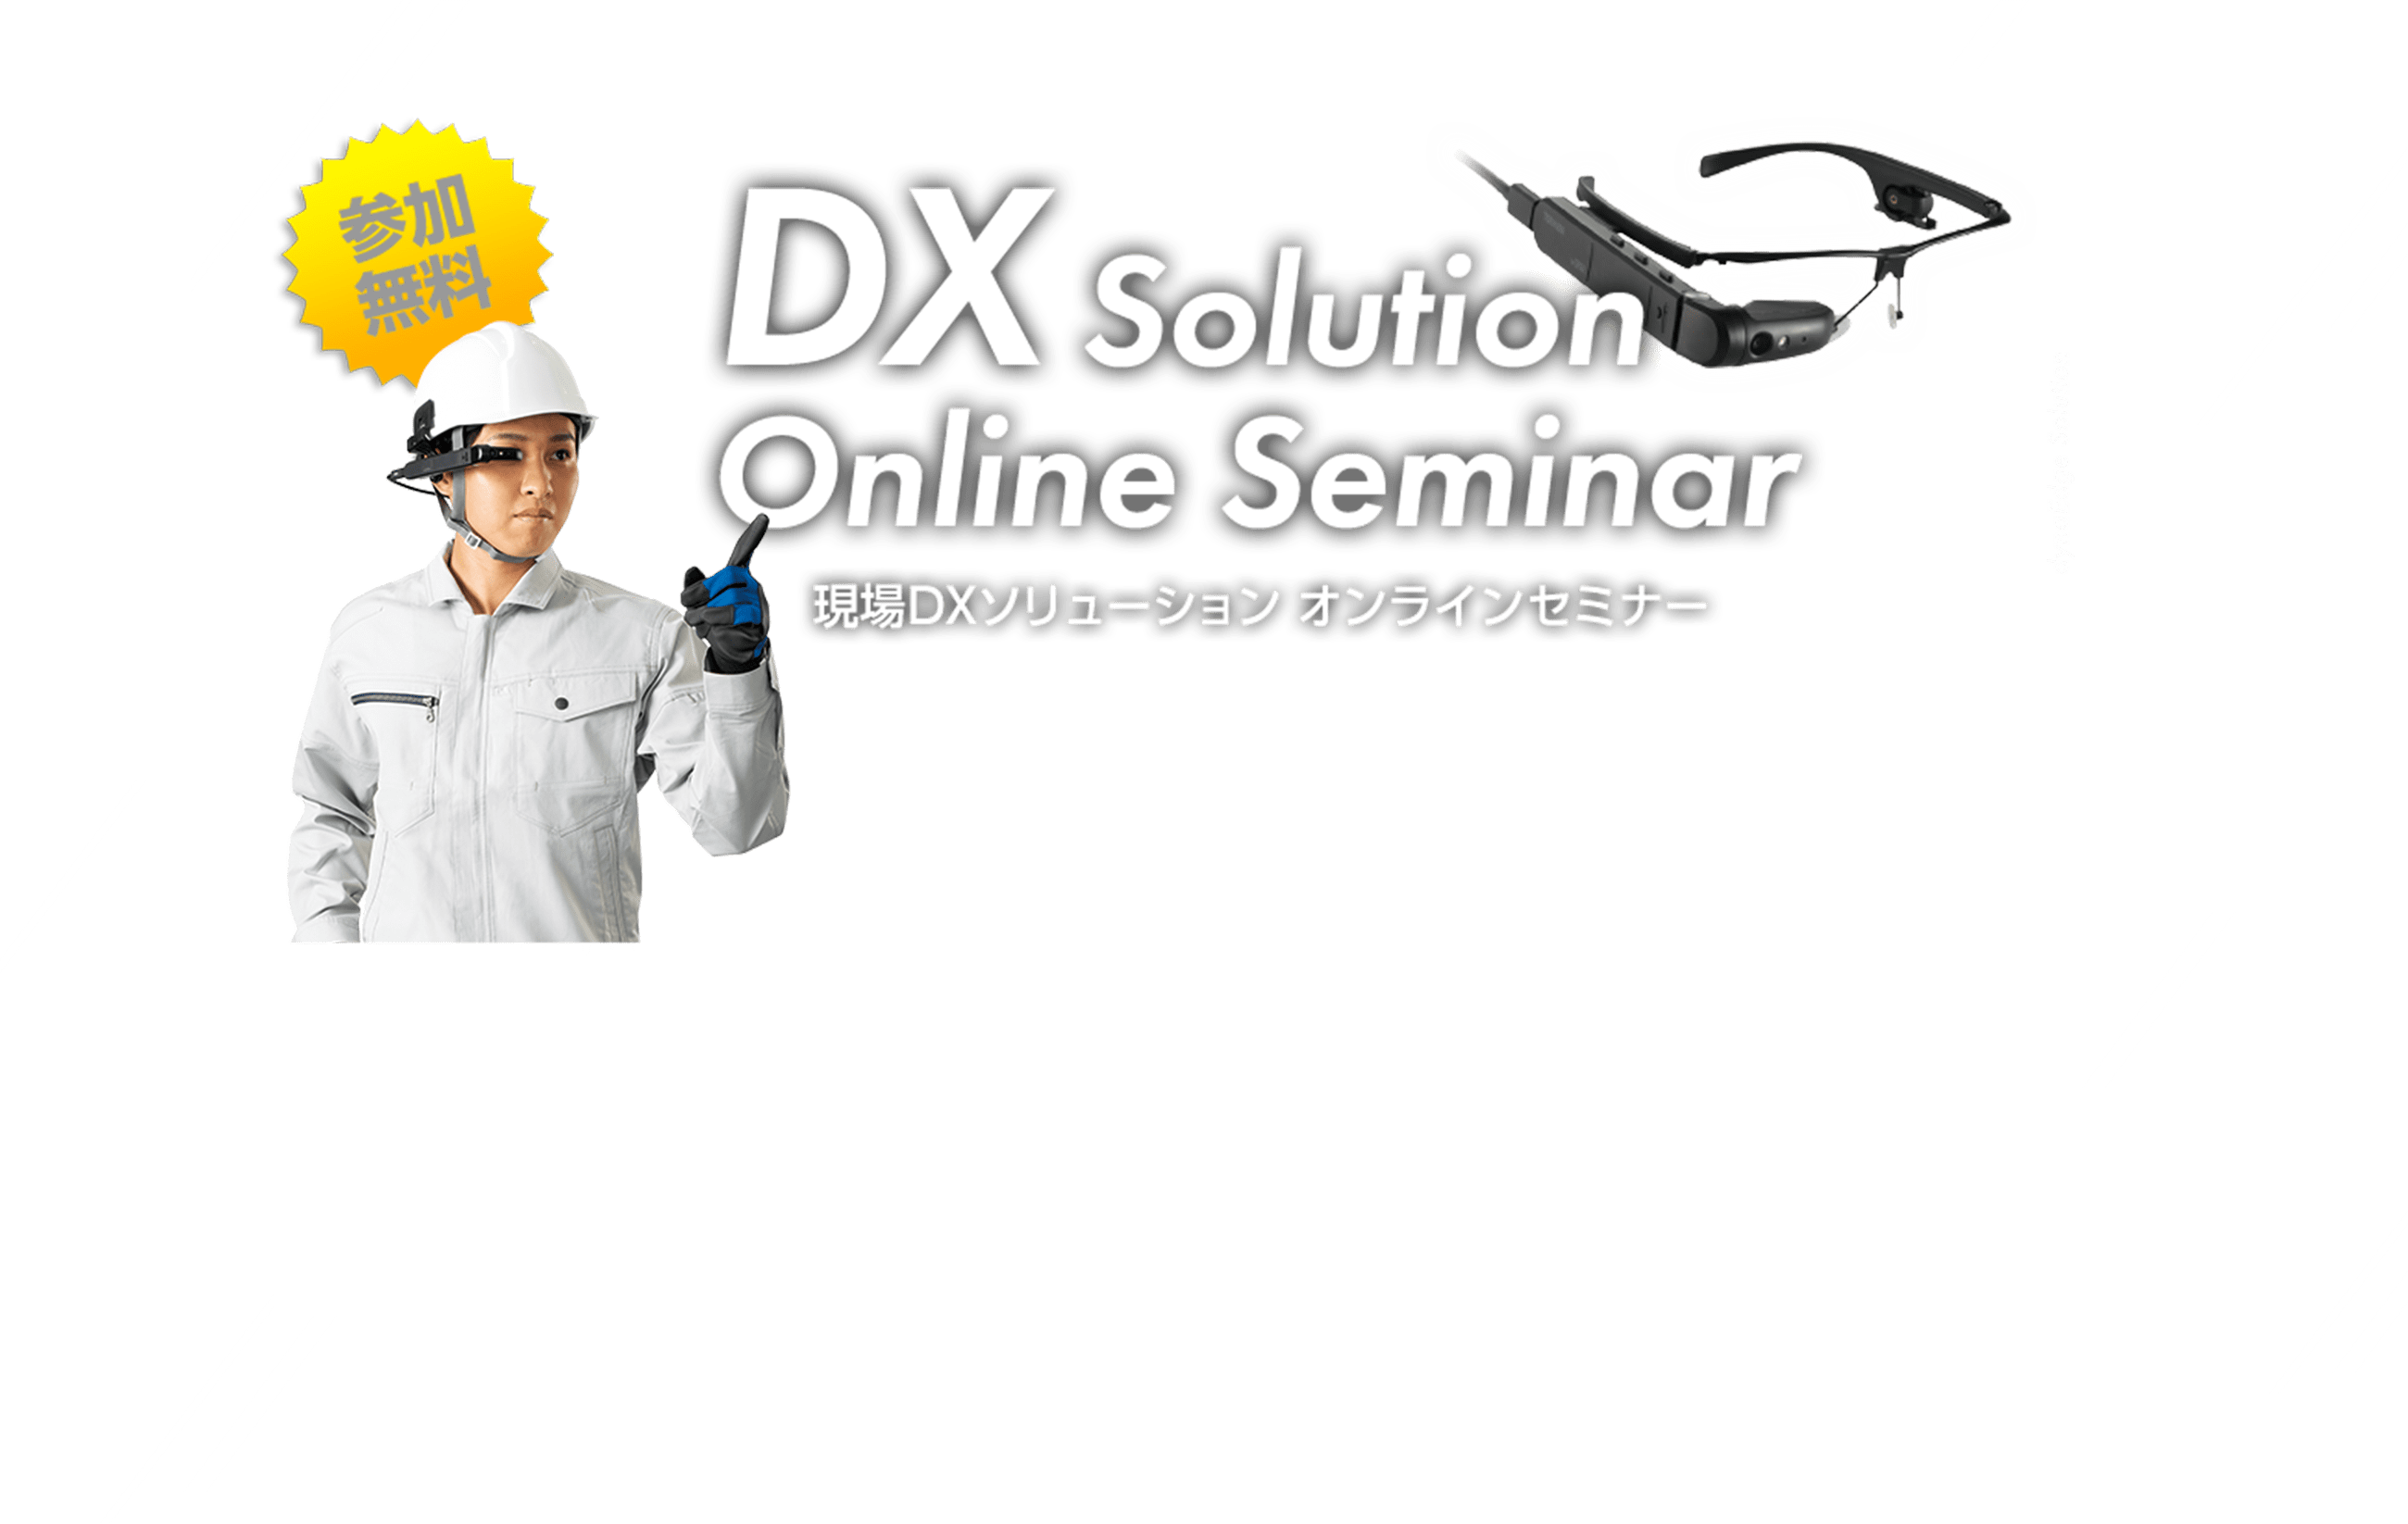 参加無料 DX Solution Online Seminar 現場DXソリューション オンラインセミナー 参加募集中のオンラインセミナー 一覧